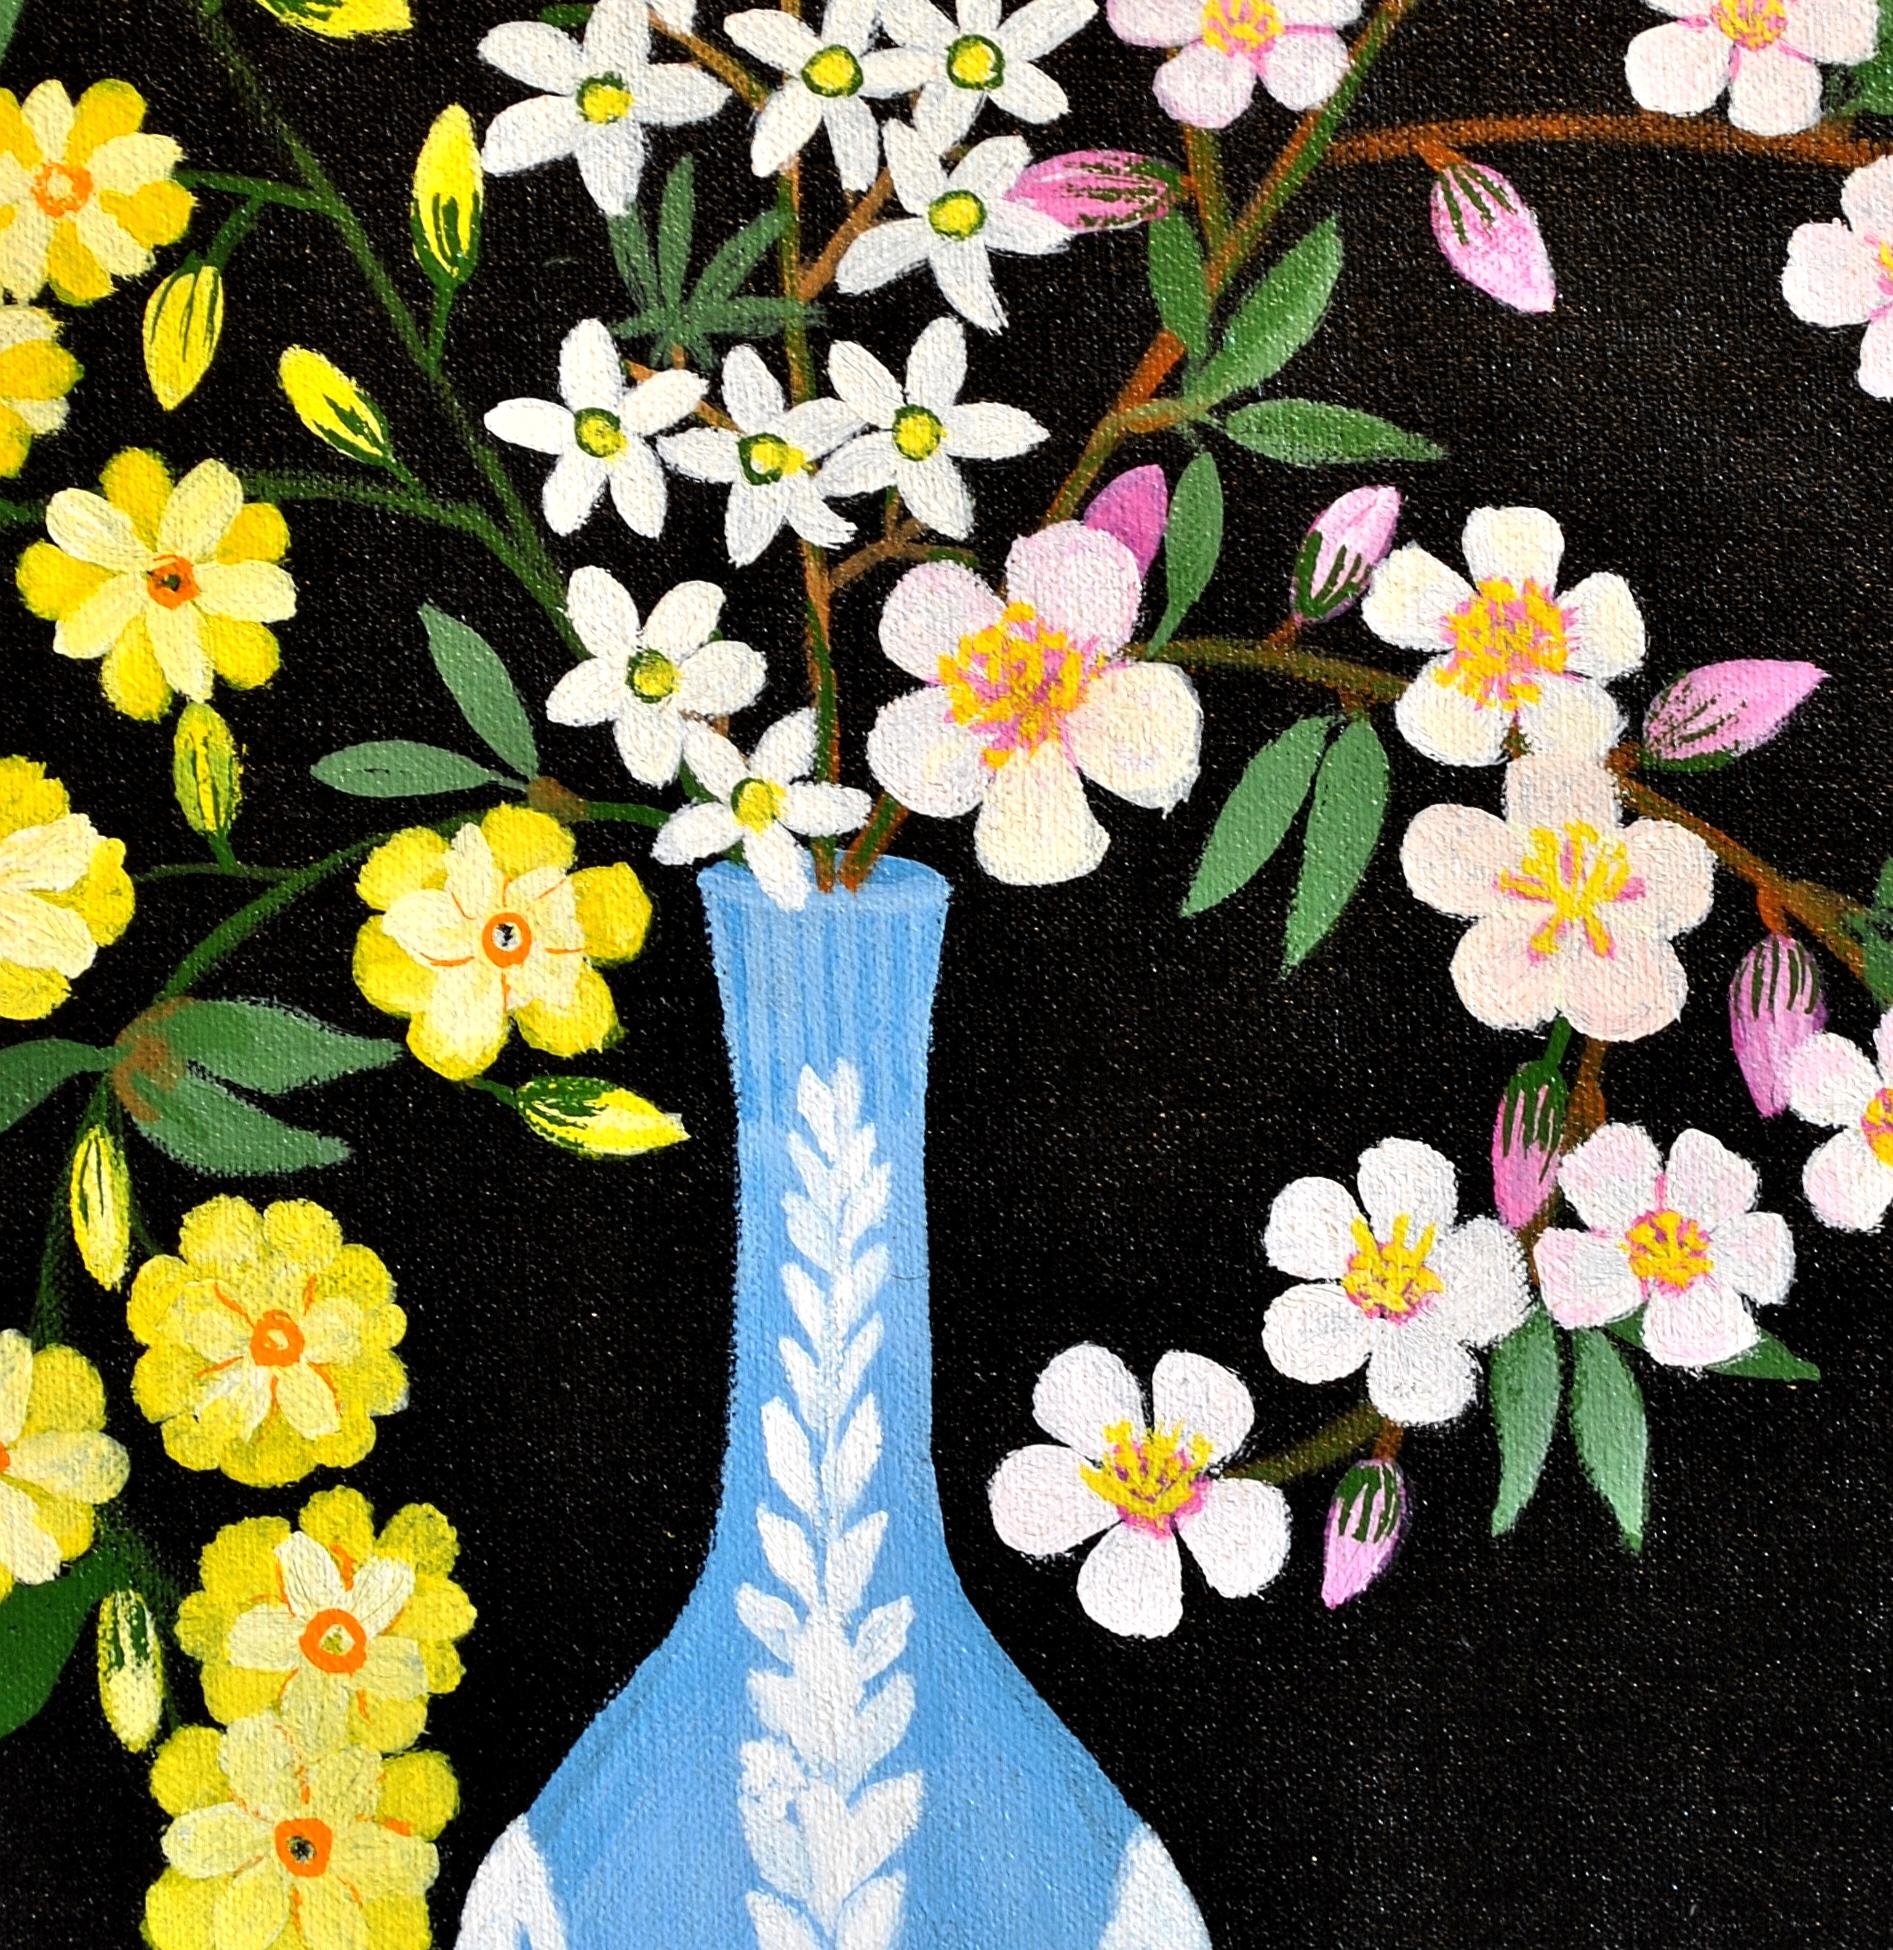 Ein wunderschönes Naïf-Stillleben in Öl auf Leinwand mit einer Frühlingsblüte in einer Wedgwood-Vase von Thraki Rossidou Jones aus Zypern. Signiert und datiert 1985 unten rechts oberhalb des Teppichs.

Thraki Rossidou Jones begann 1980 zu malen. Sie